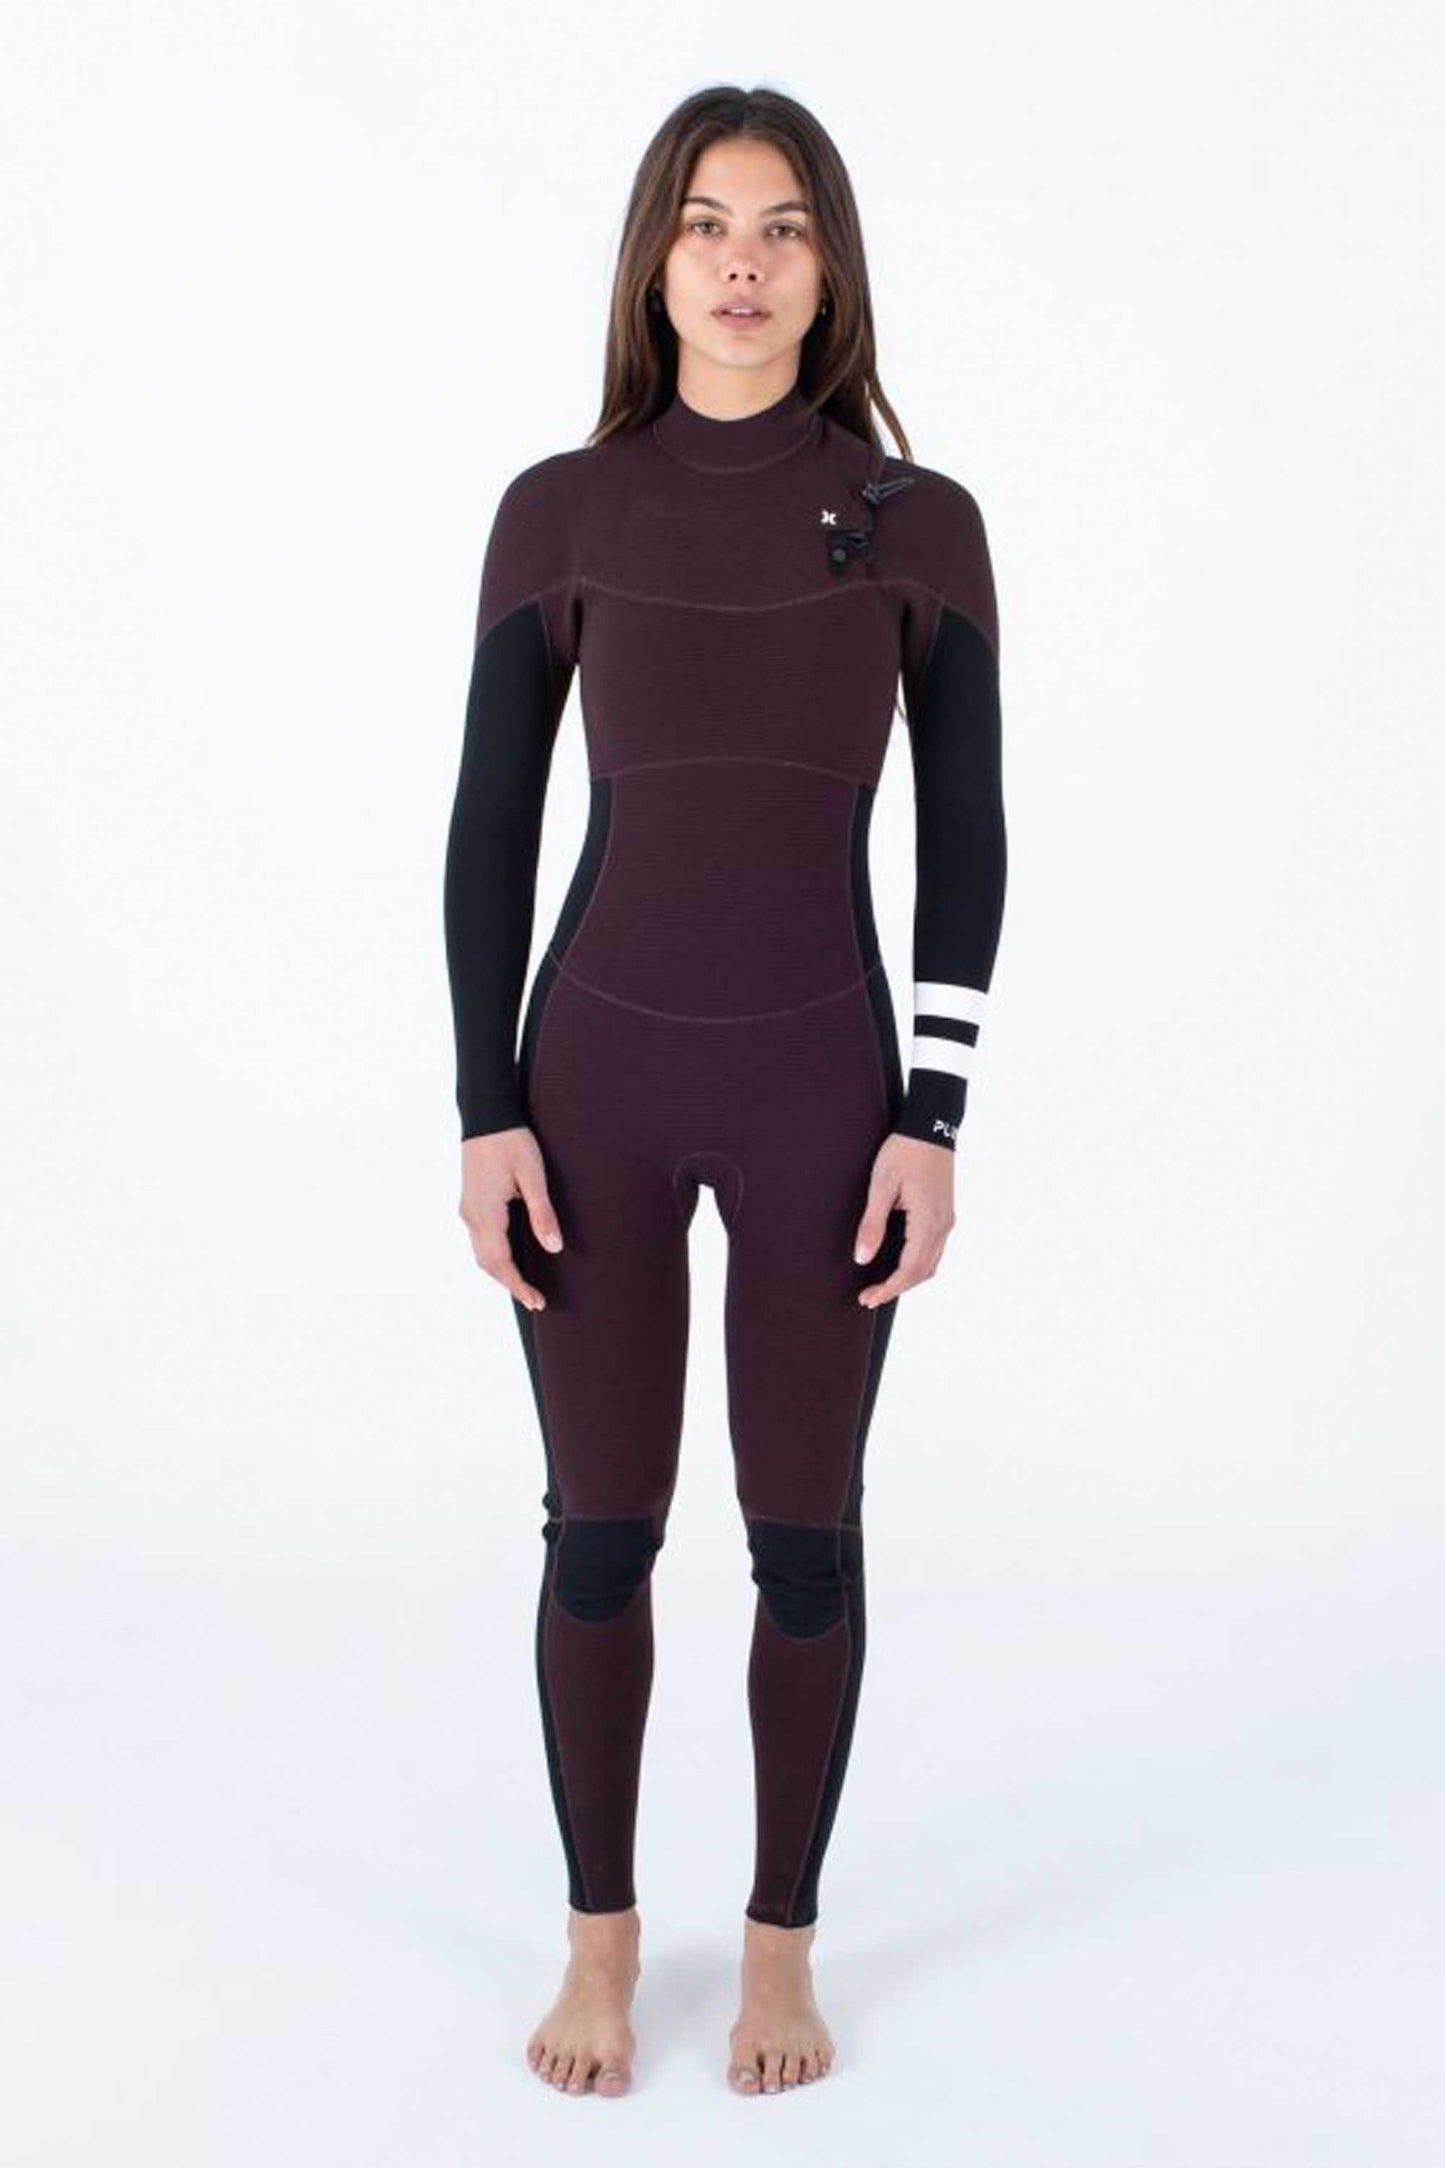 
                  
                    Pukas-Surf-Shop-Hurley-wetsuit-woman-3-2-fullsuit-women
                  
                